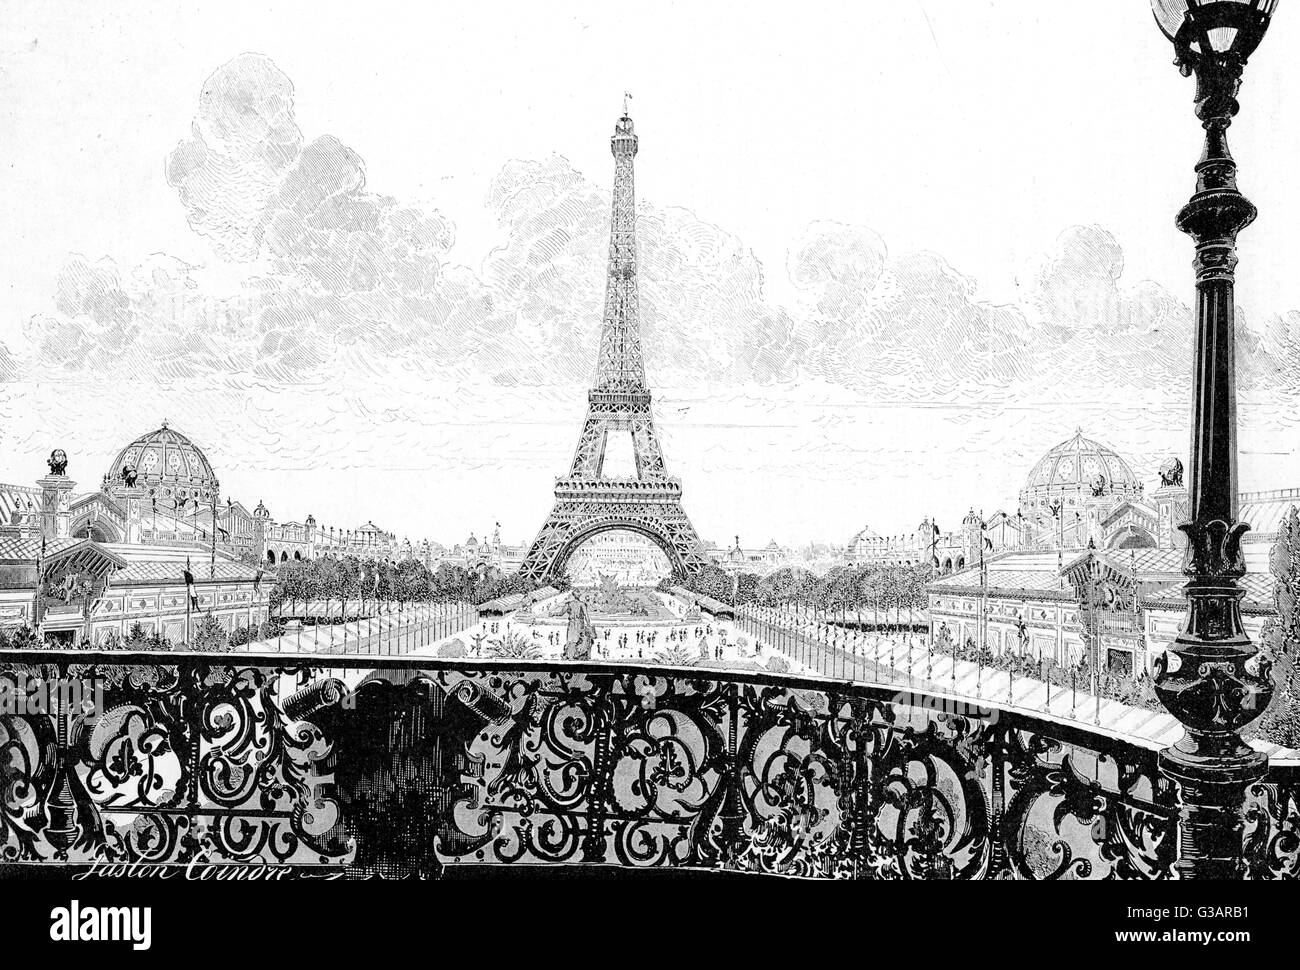 Paris, France - la Tour Eiffel. Banque D'Images